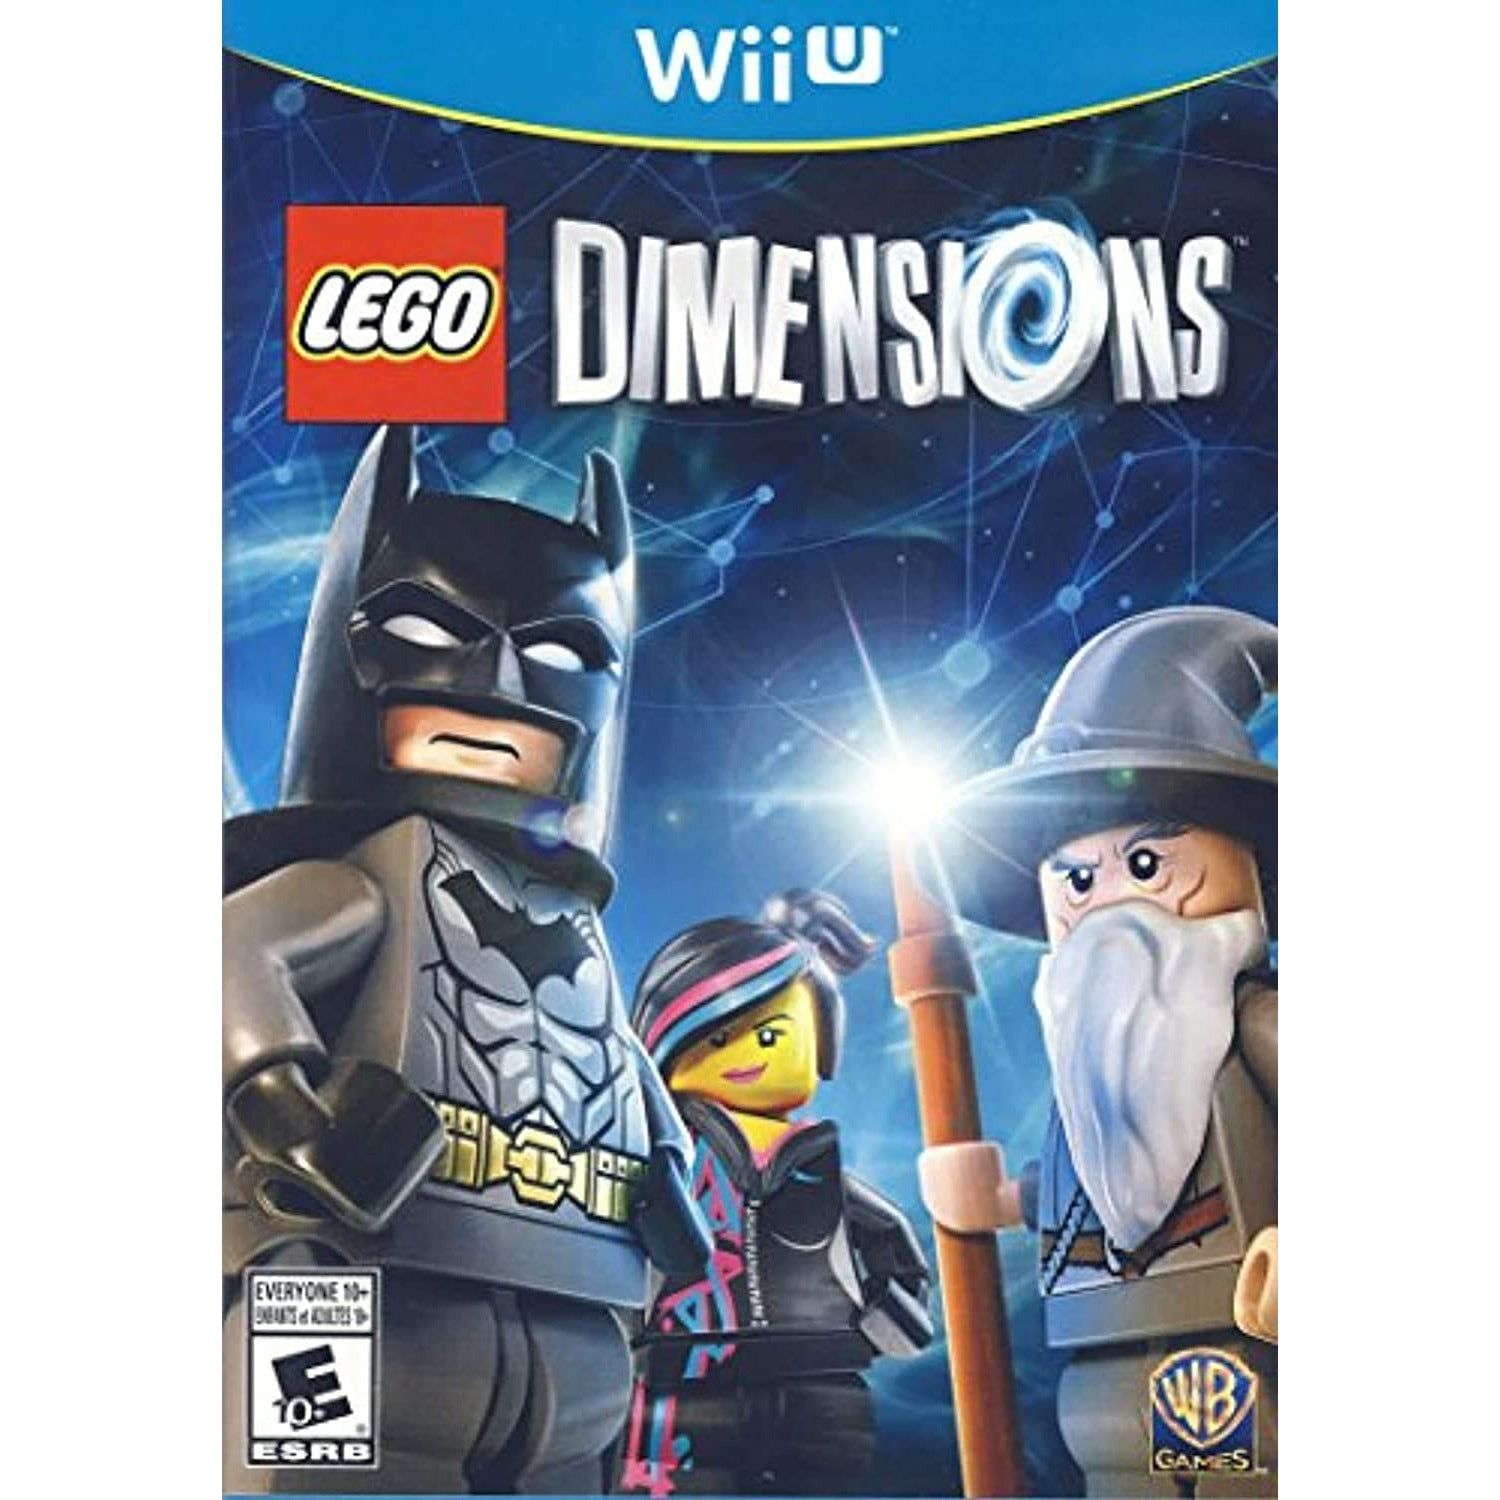 WII U - Dimensions Lego (jeu uniquement)